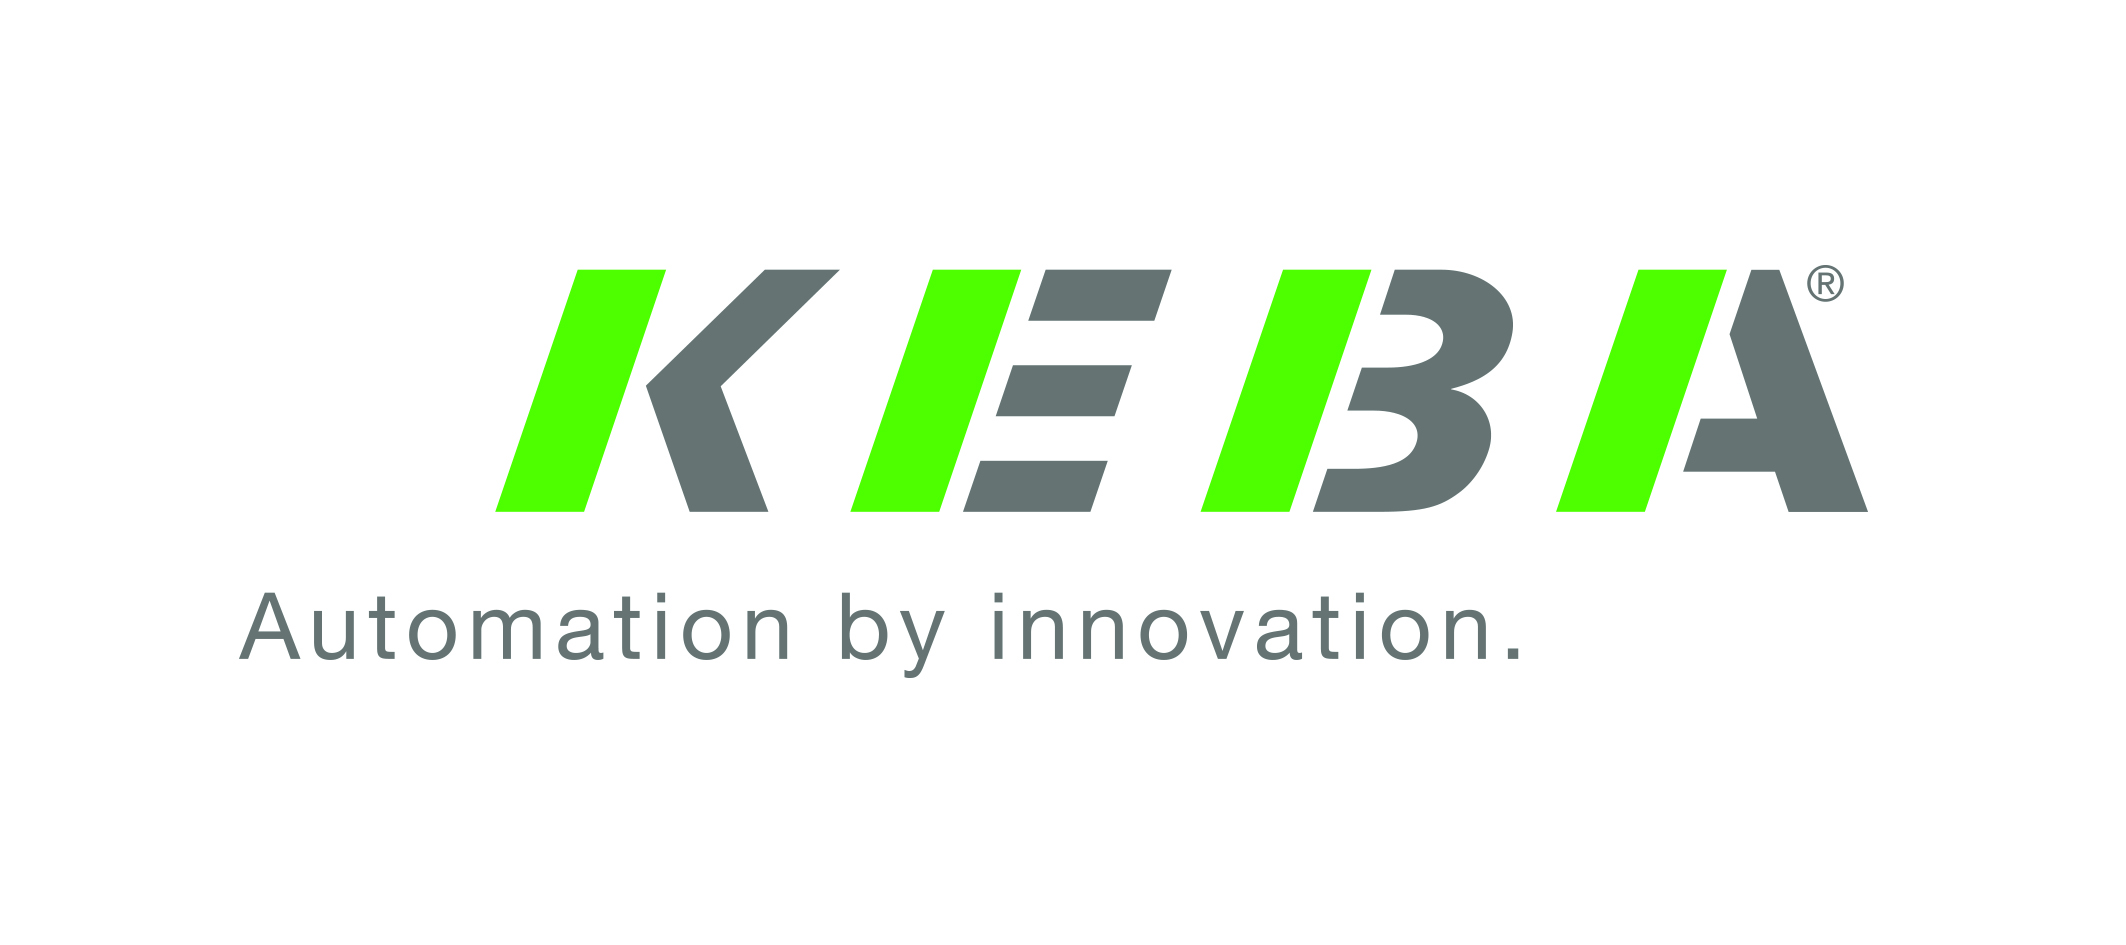 KEBA KeContact P30 x-series GREEN EDITION Wallbox